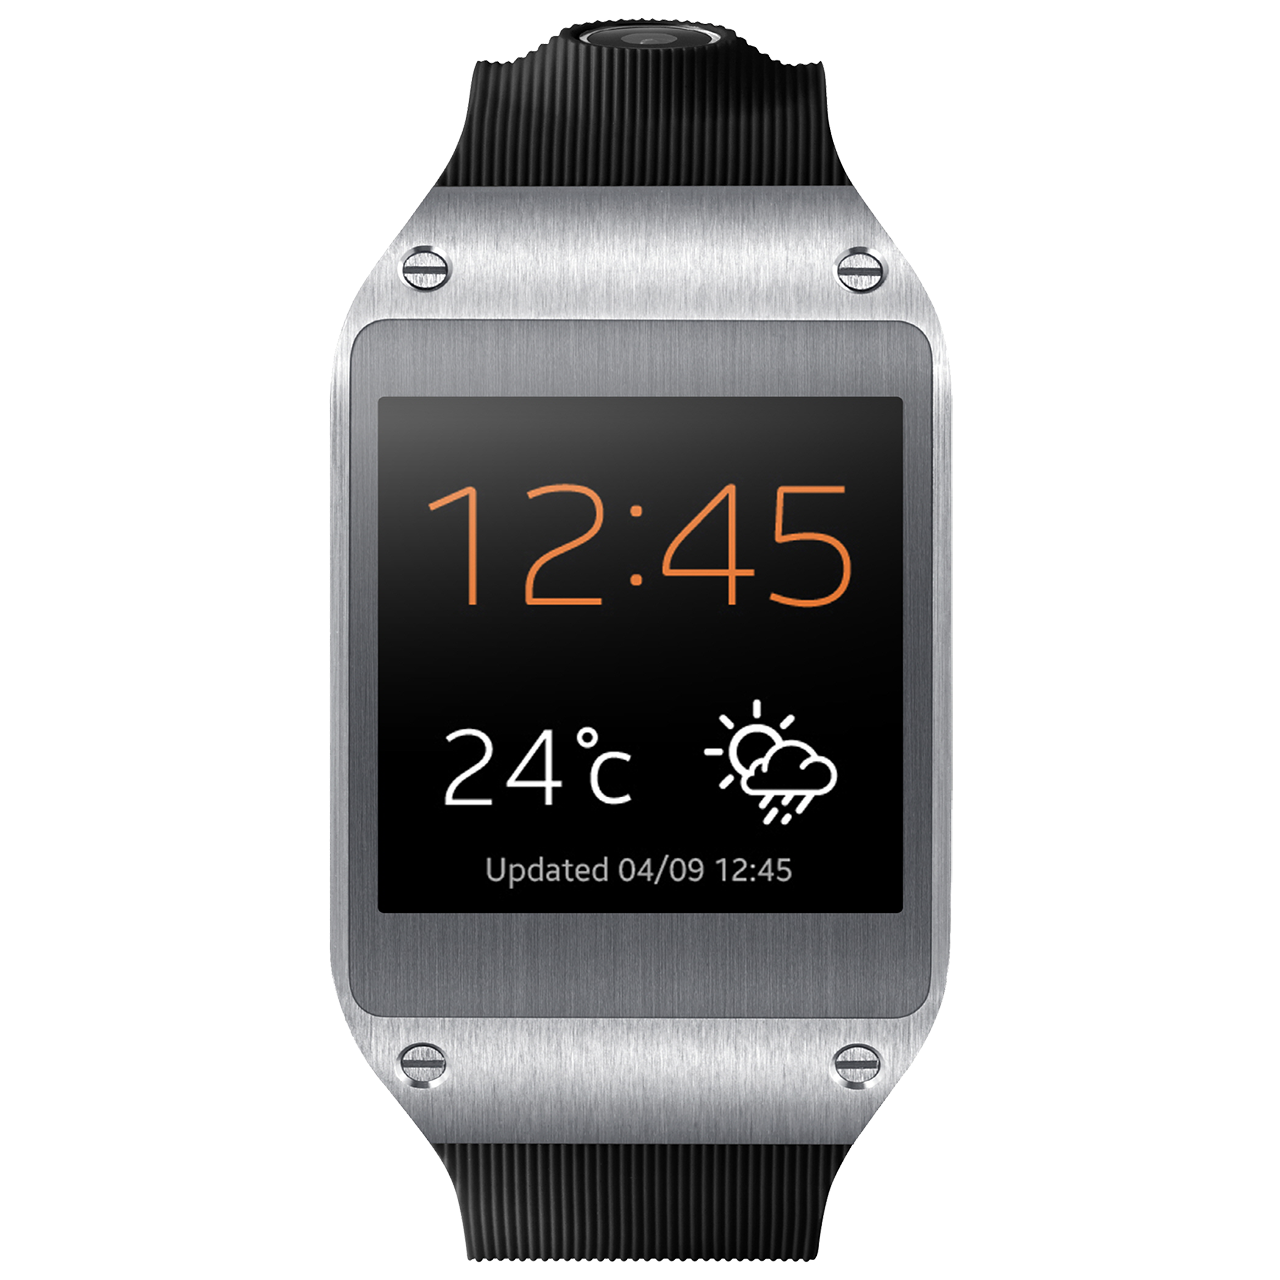 Wrist Band Smart Watch PNG Image